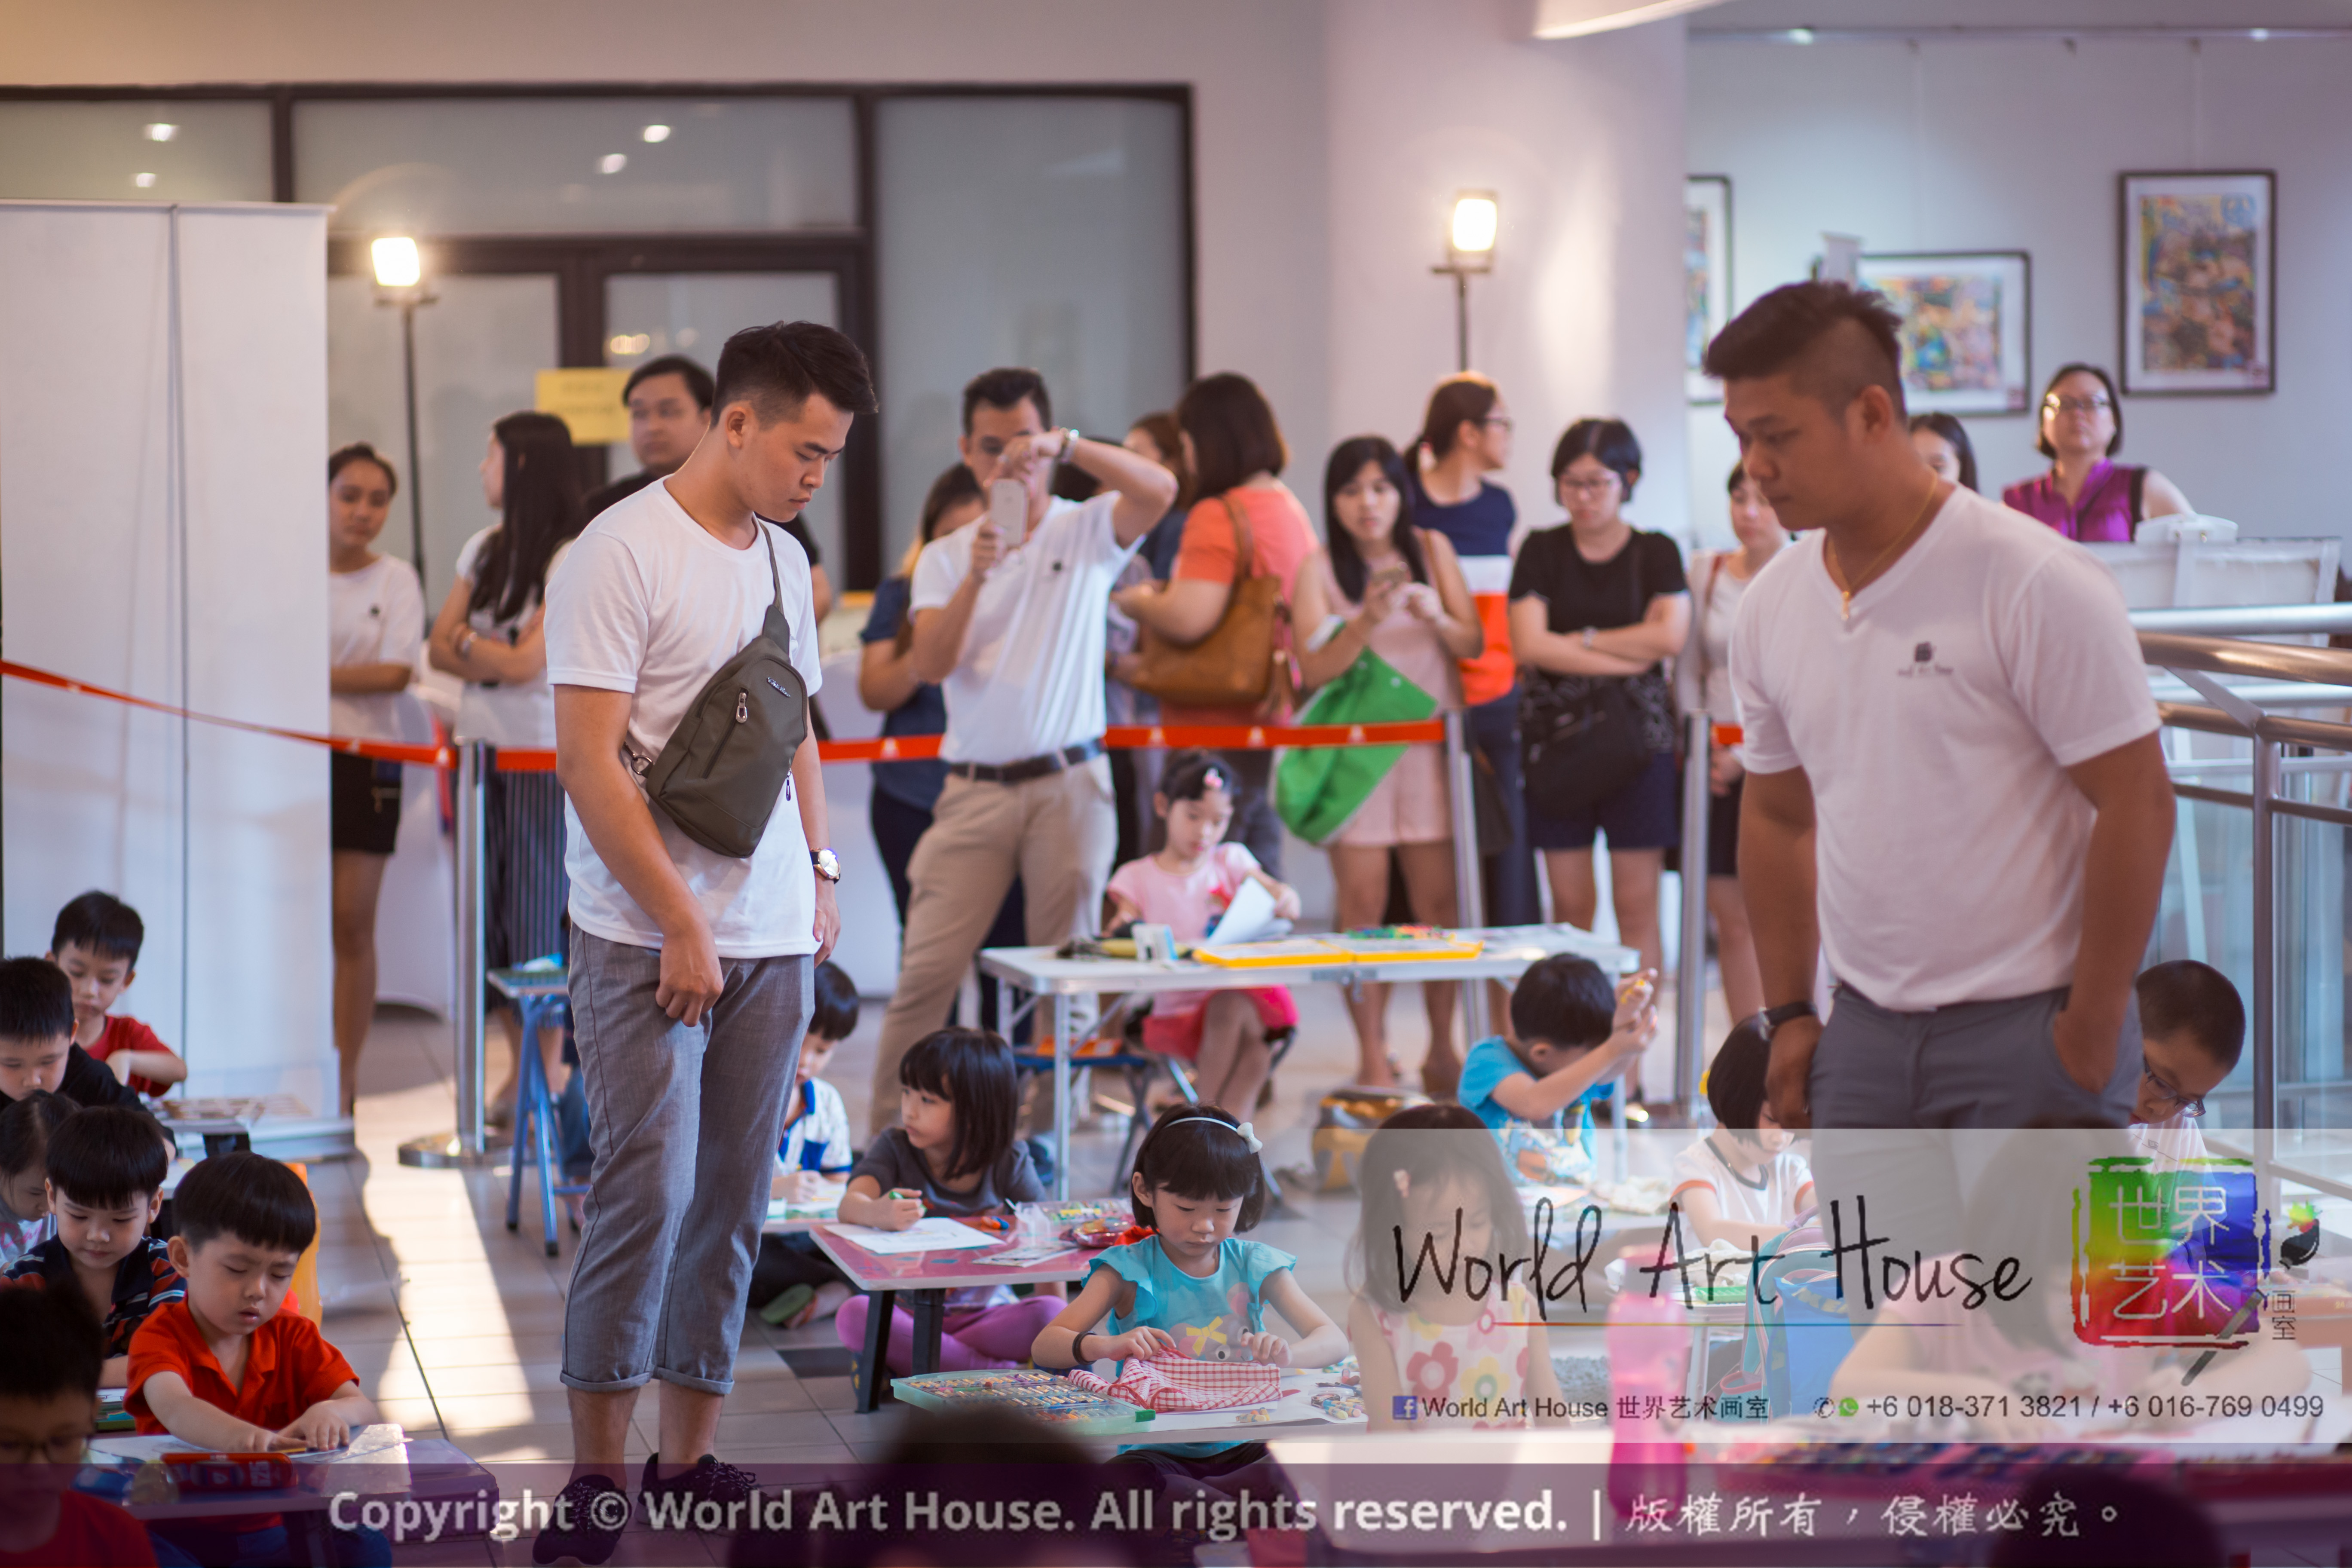 马来西亚 哥打白沙罗 八打灵再也 吉隆坡 雪兰莪 金犬报喜迎旺年 创意填色比赛 World Art House 世界艺术画室 及 1 Utama Shopping 金爺爺 JinYeYe Effye Media A046